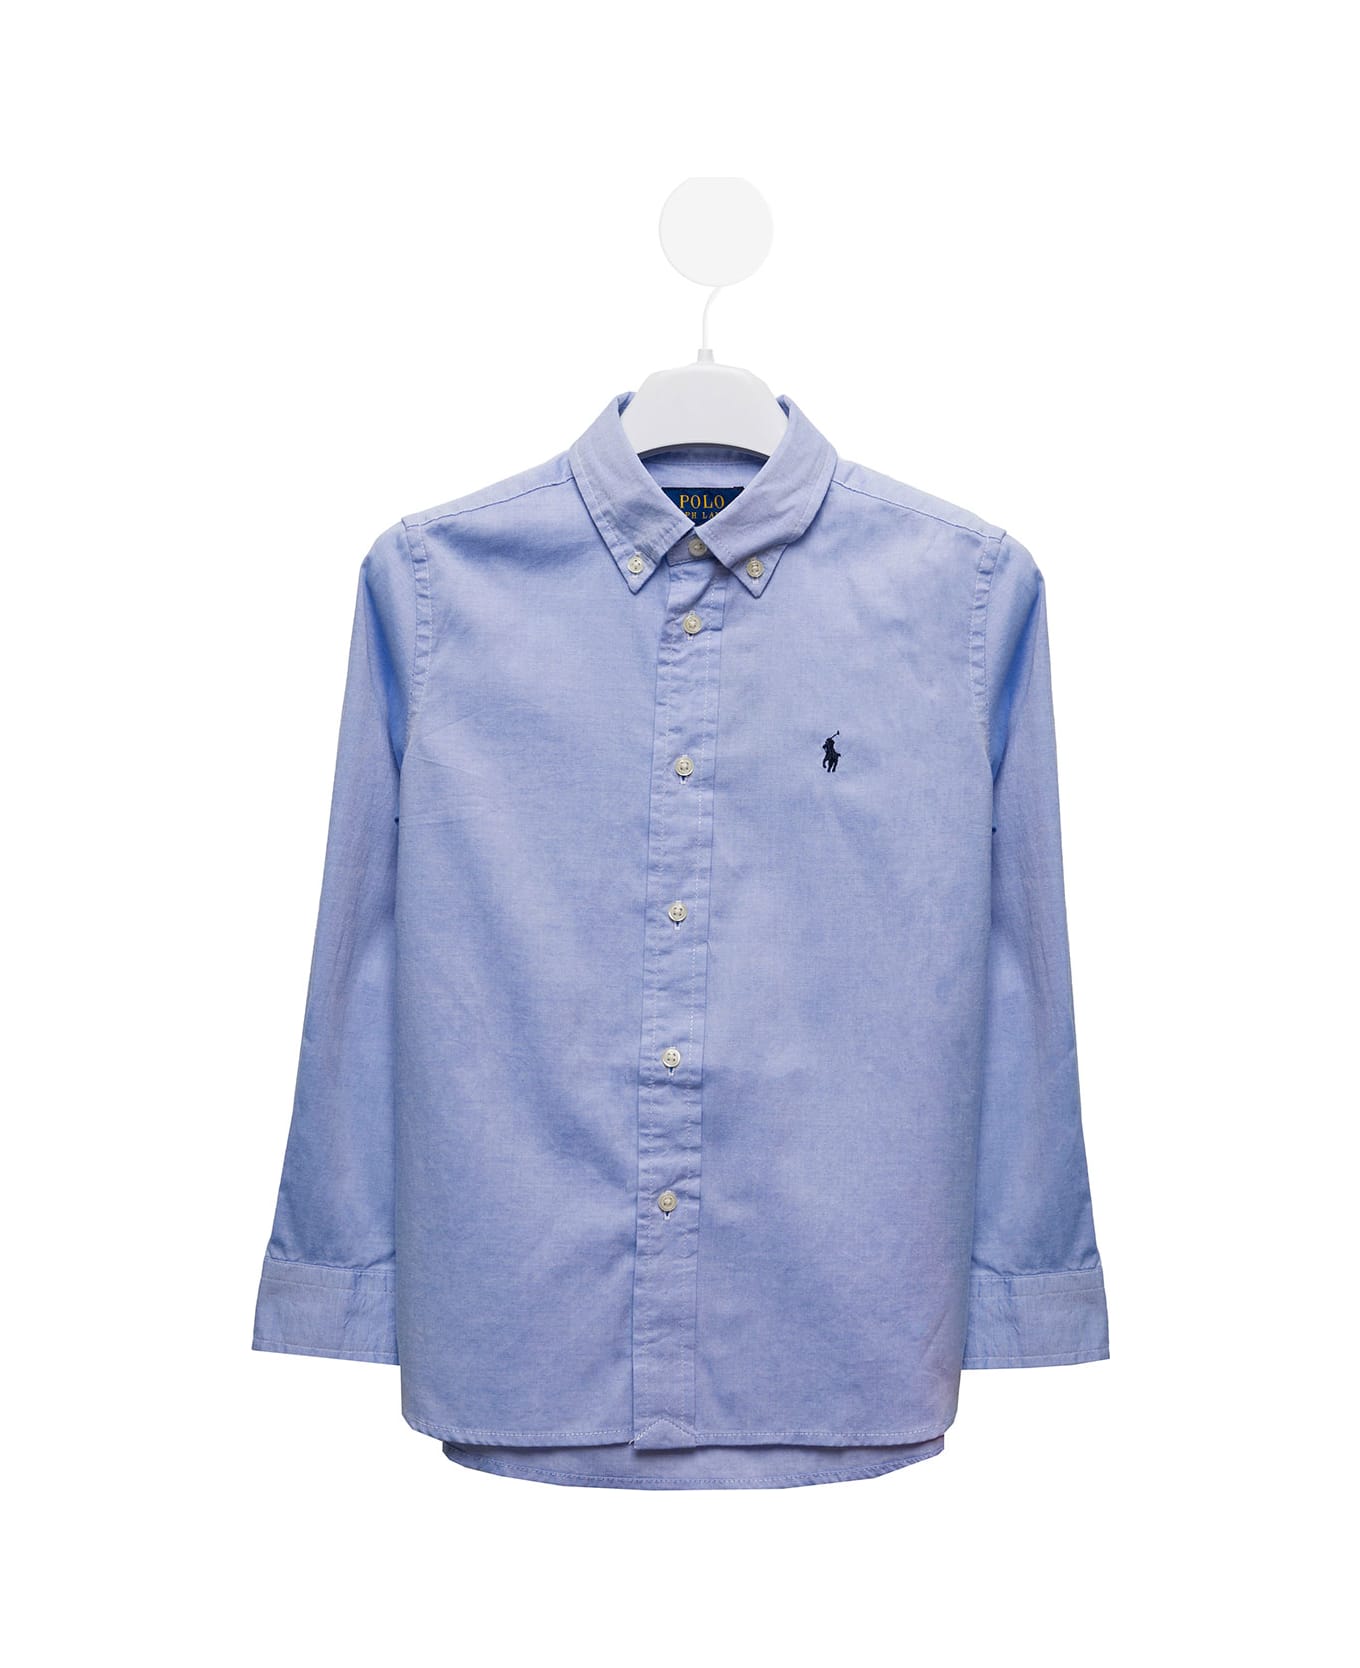 Ralph Lauren Light Blue Cotton Poplin Shirt With Logo Polo Ralph Lauren Kids Boy - LIGHT BLUE シャツ